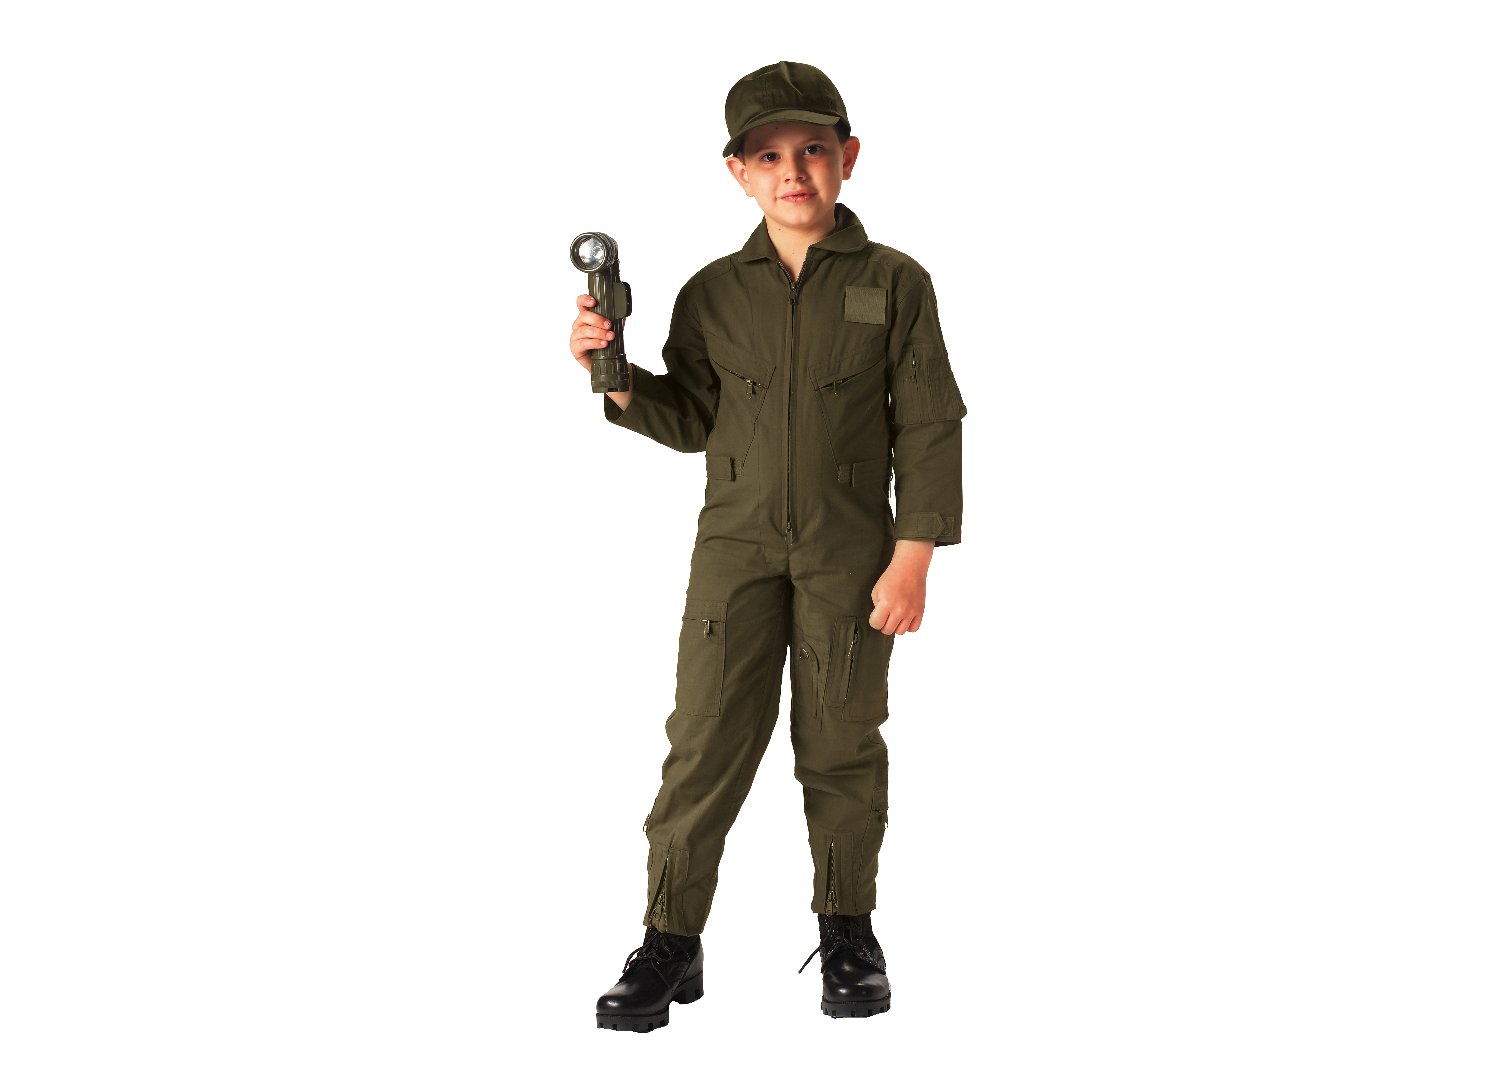 Kids Flightsuit - Tactical Choice Plus